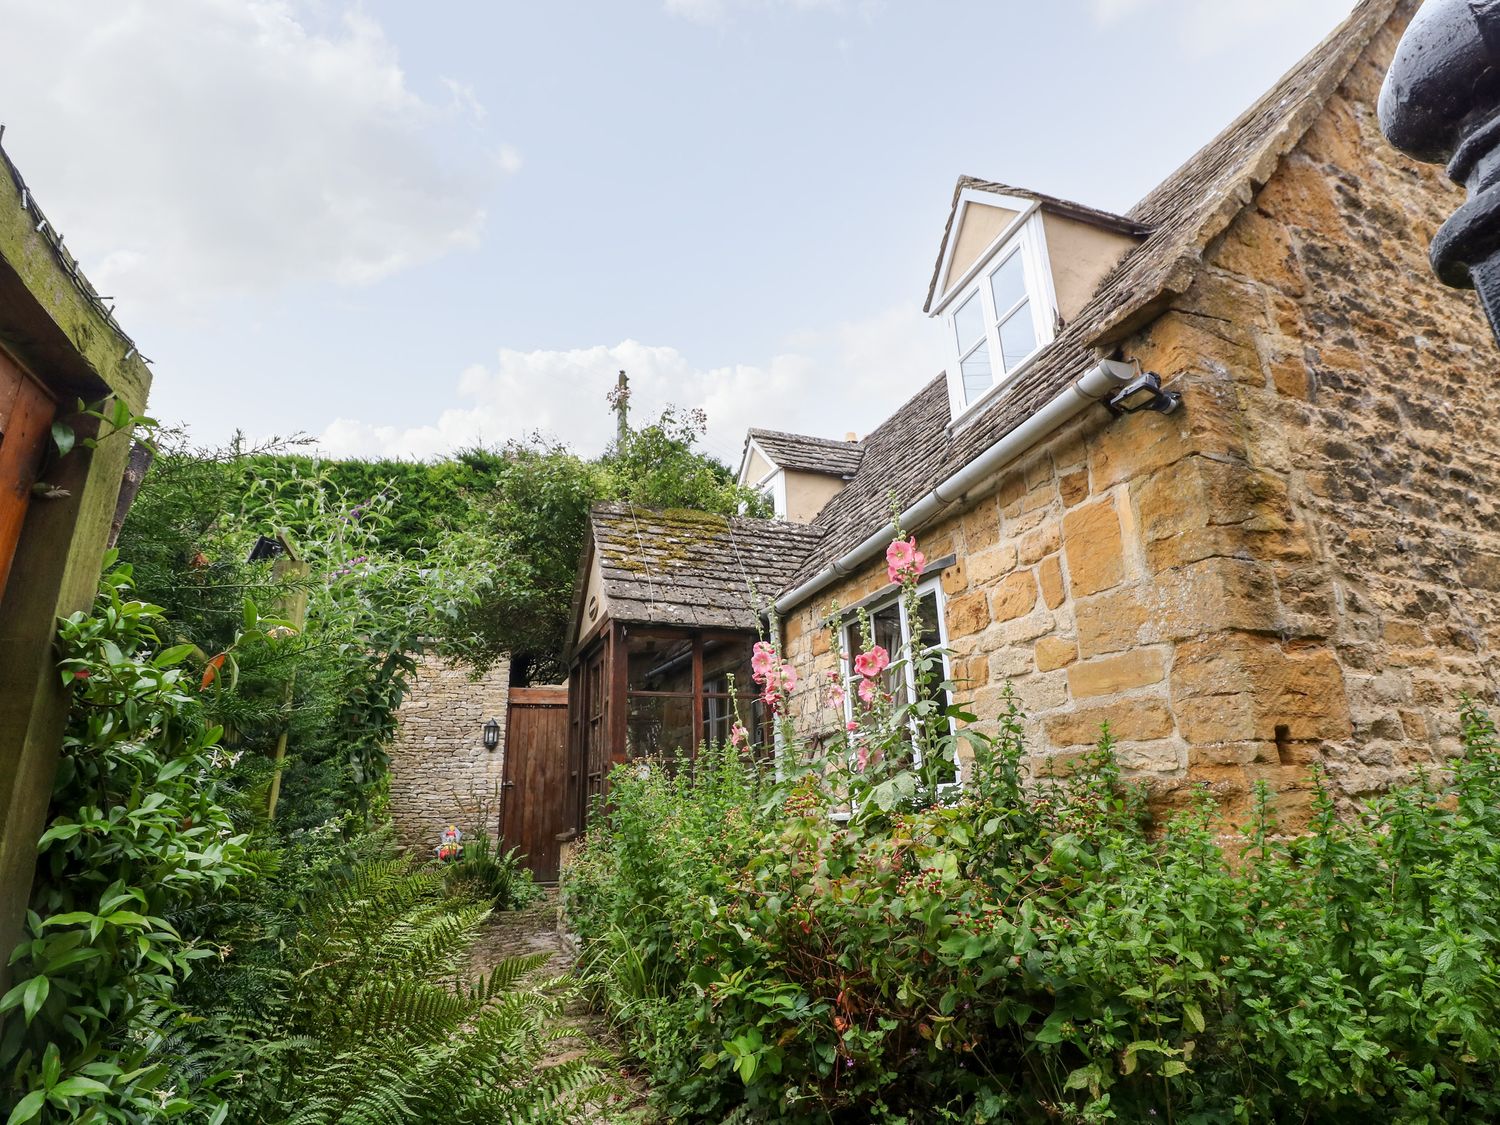 Hadcroft Cottage, Aston Magna